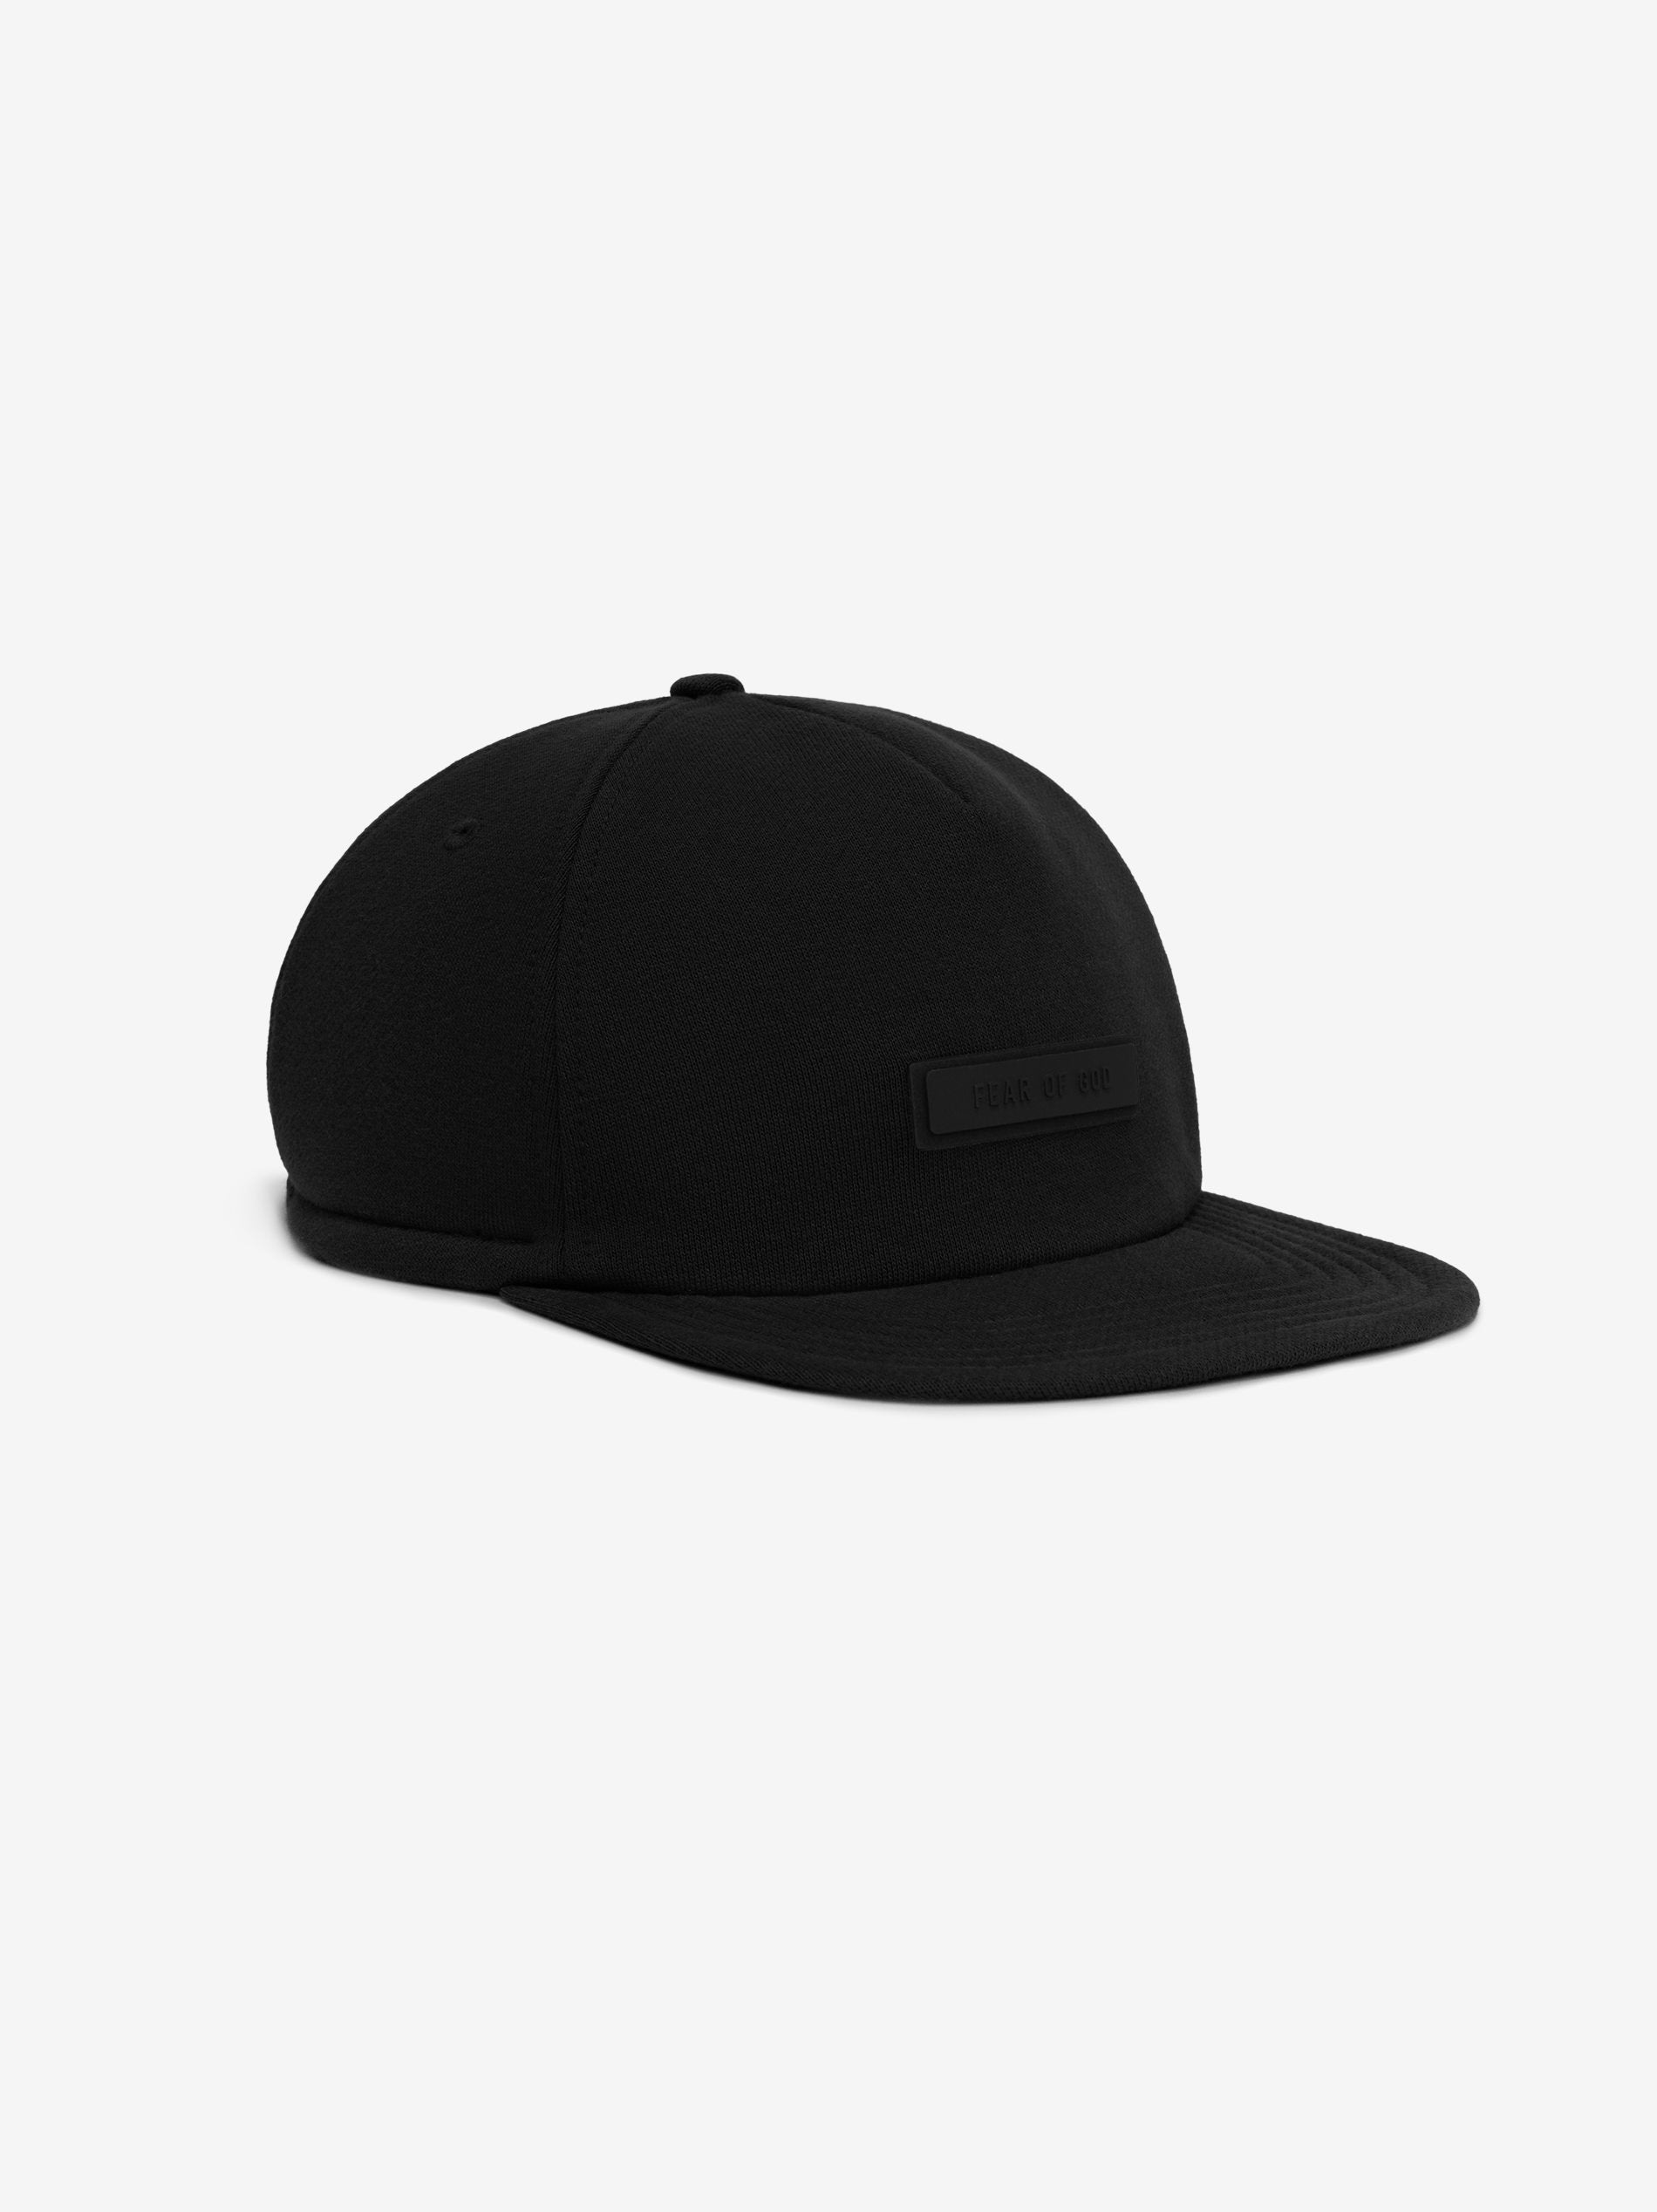 Buy Camo Caps & Hats for Men by Cultsport Online